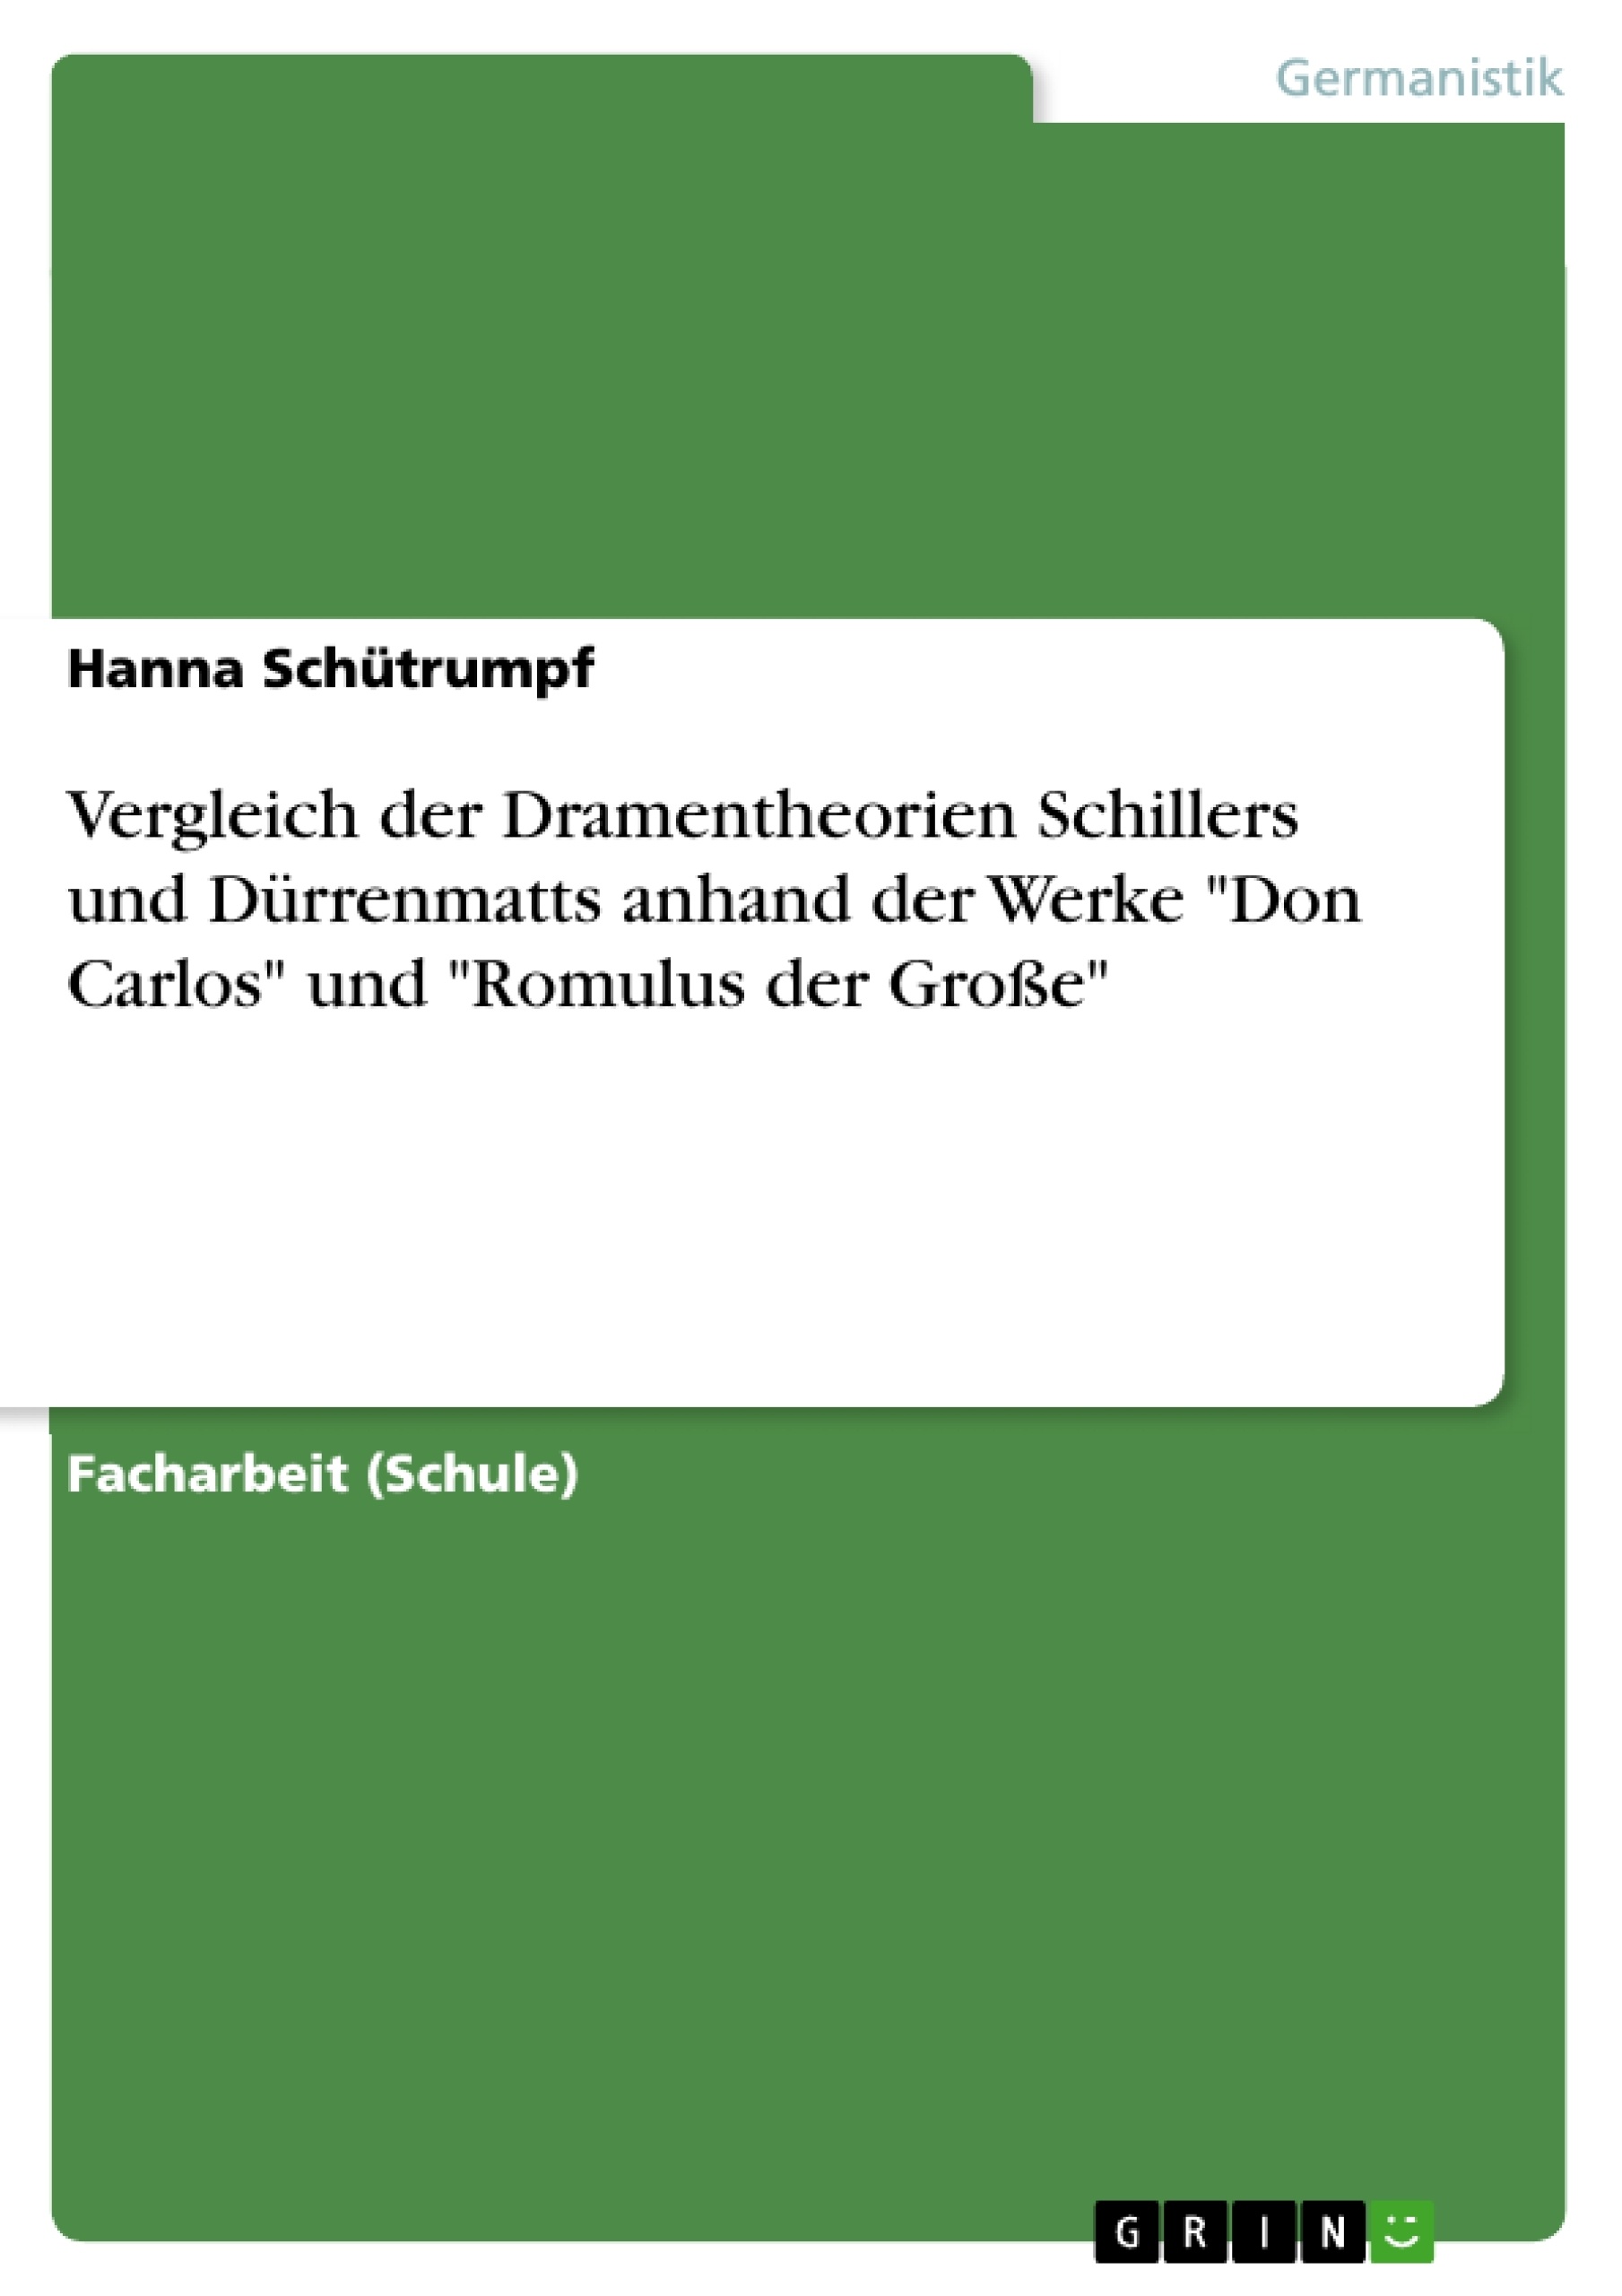 Title: Vergleich der Dramentheorien Schillers und Dürrenmatts anhand der Werke "Don Carlos" und "Romulus der Große"